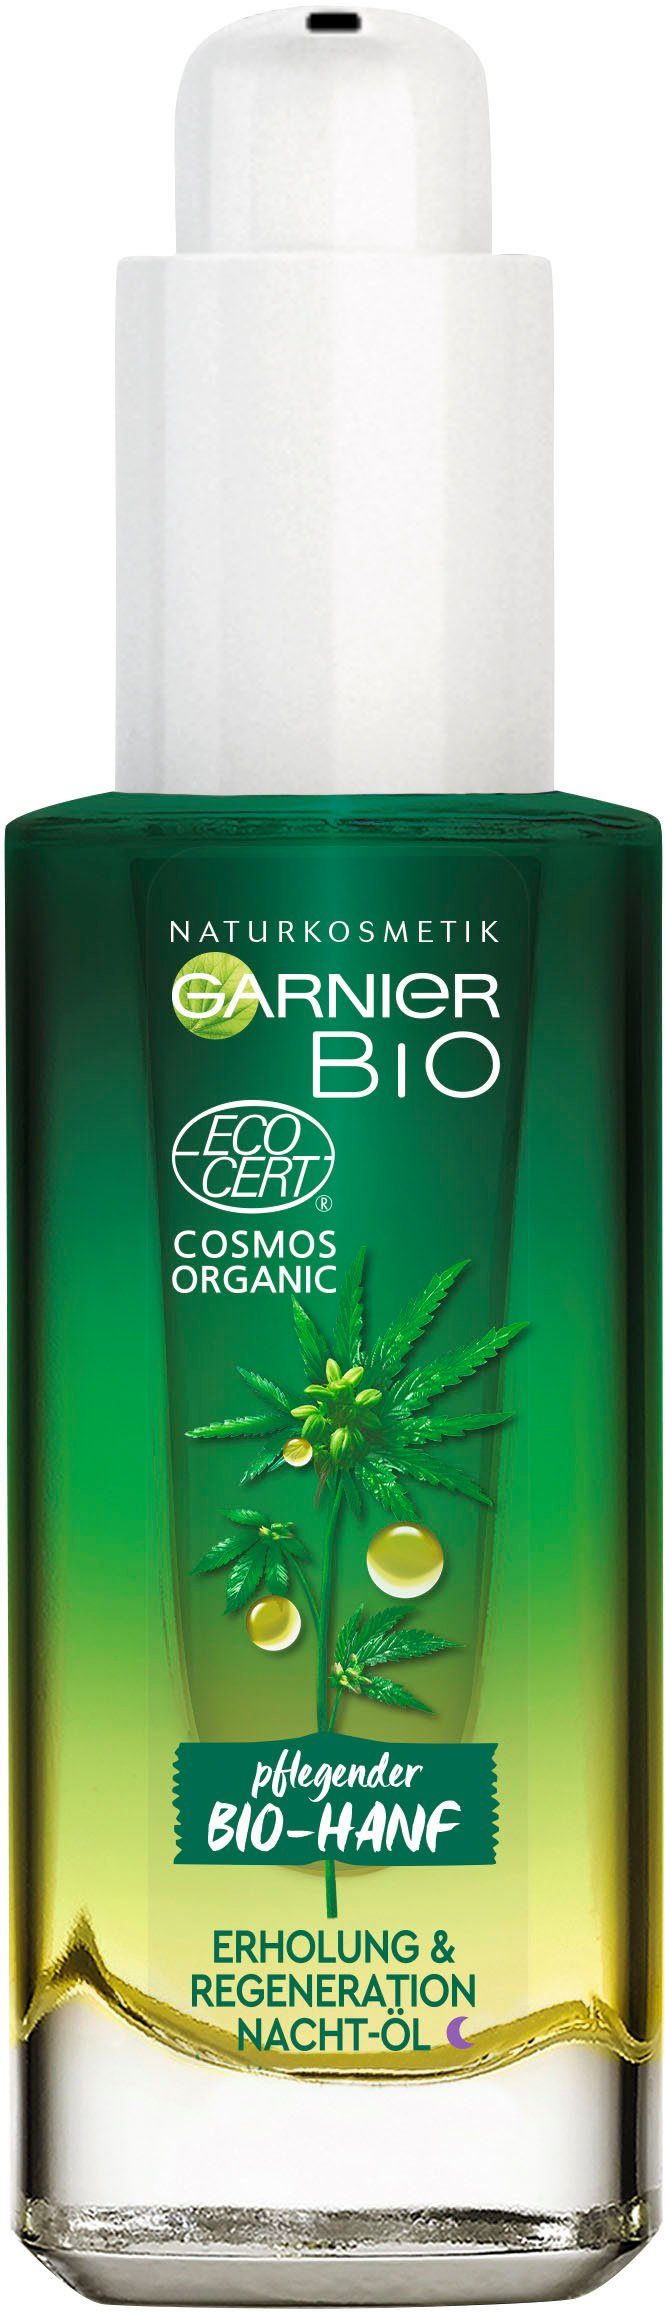 Gesichtsöl Bio-Hanf Naturkosmetik & Erholung Regeneration GARNIER Nacht-Öl,